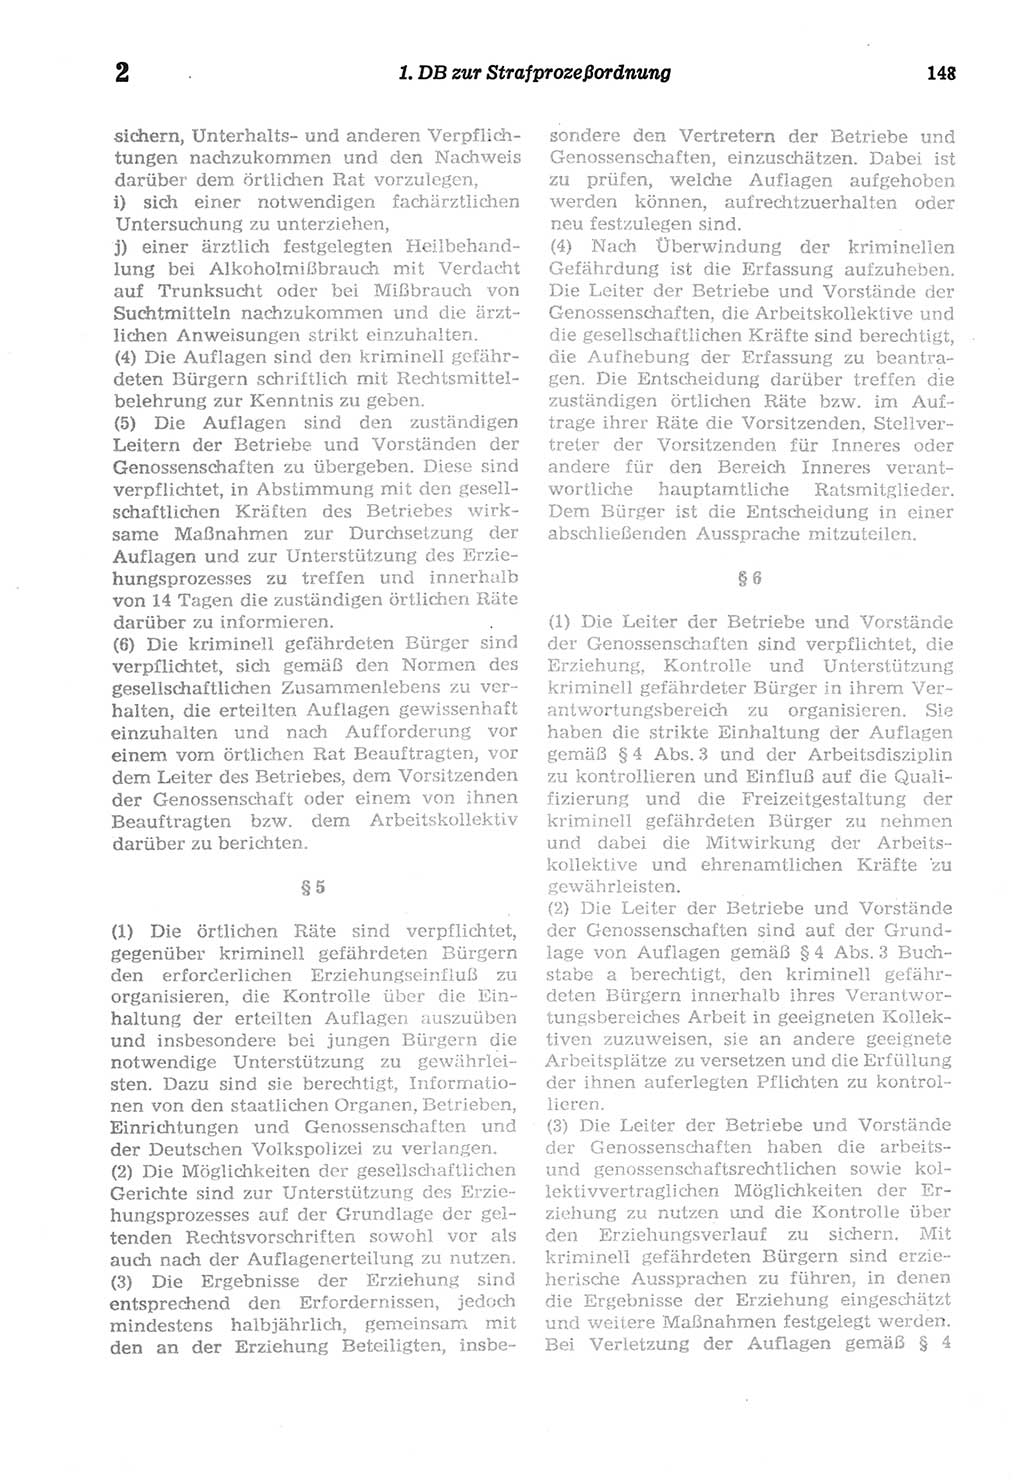 Strafprozeßordnung (StPO) der Deutschen Demokratischen Republik (DDR) sowie angrenzende Gesetze und Bestimmungen 1977, Seite 148 (StPO DDR Ges. Best. 1977, S. 148)